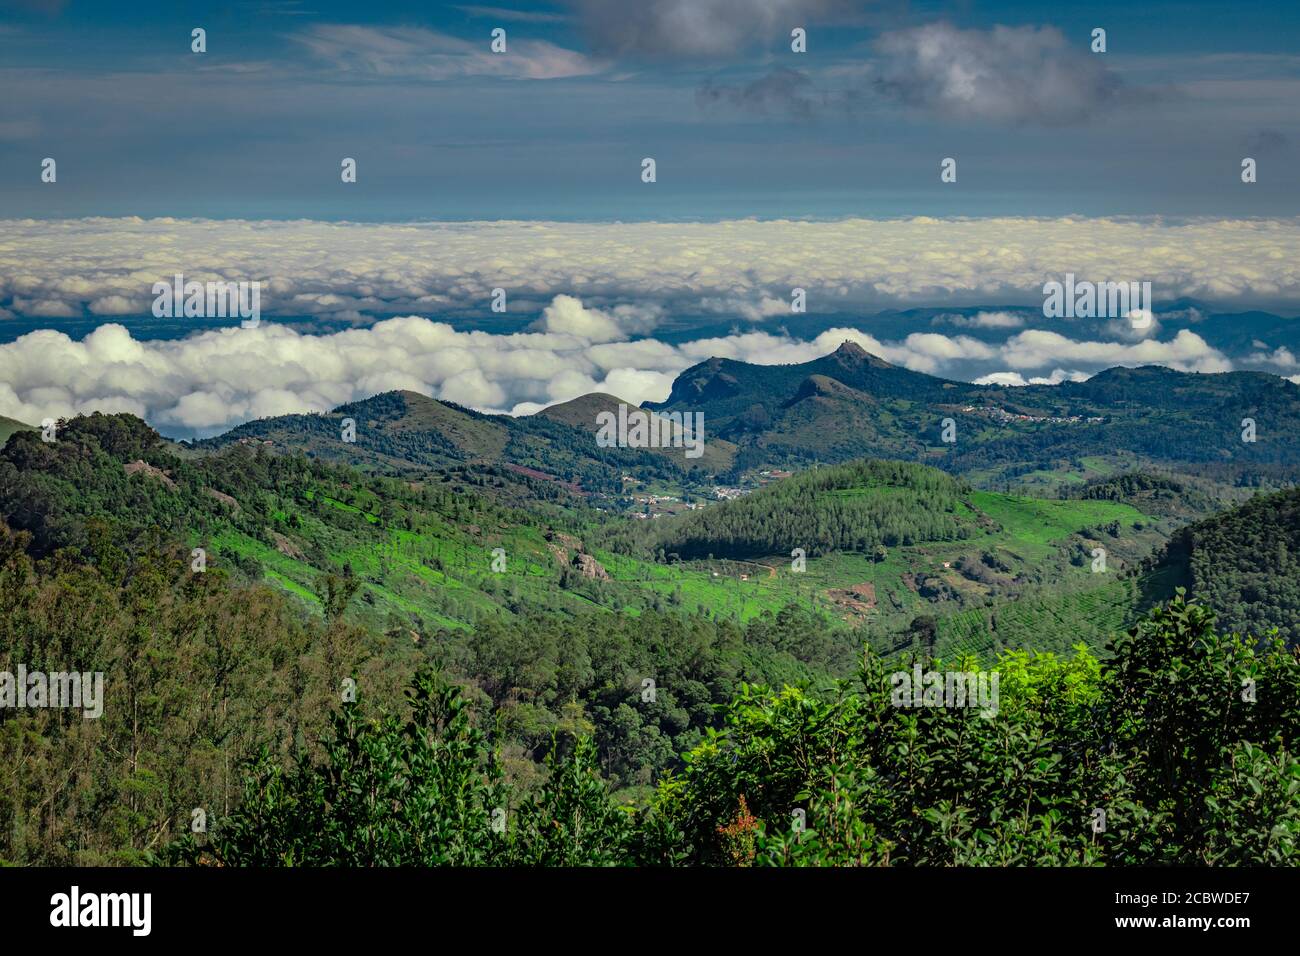 Gebirge mit Wolkenschichten und grünen Wald Bild ist in südindien aufgenommen. Es zeigt die schöne Landschaft von südindien. Stockfoto